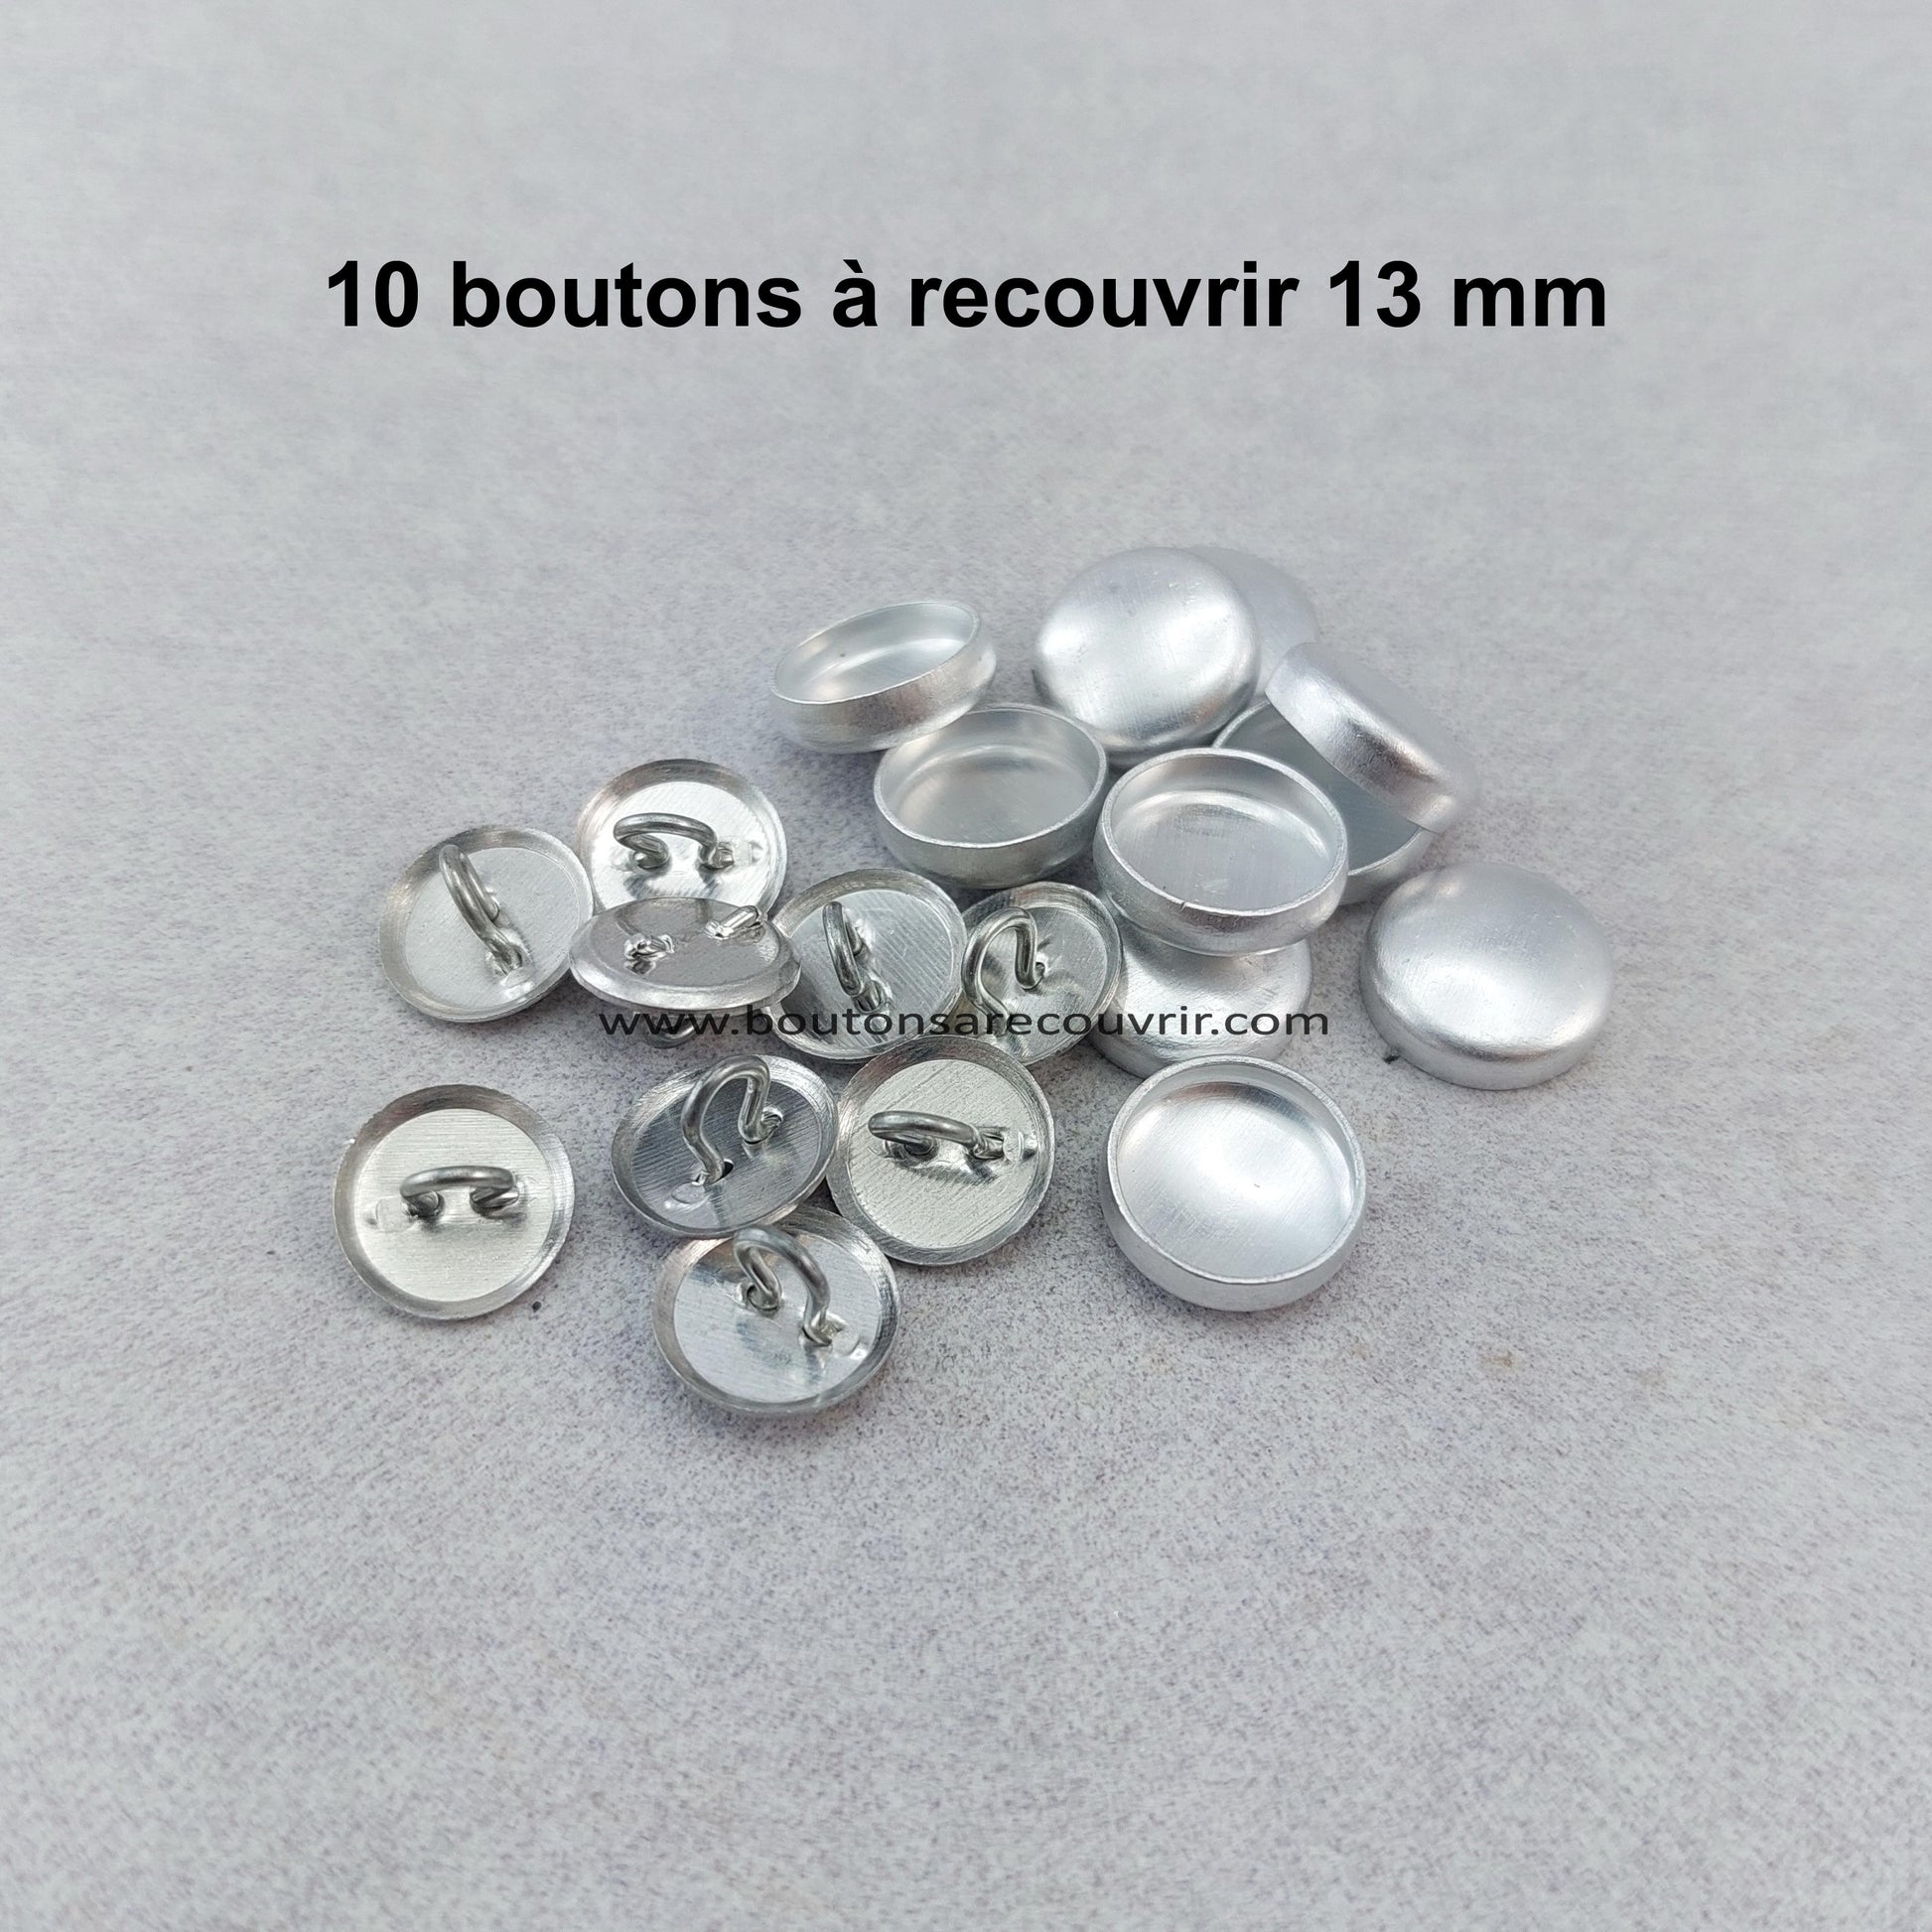 10 boutons à recouvrir 13 mm